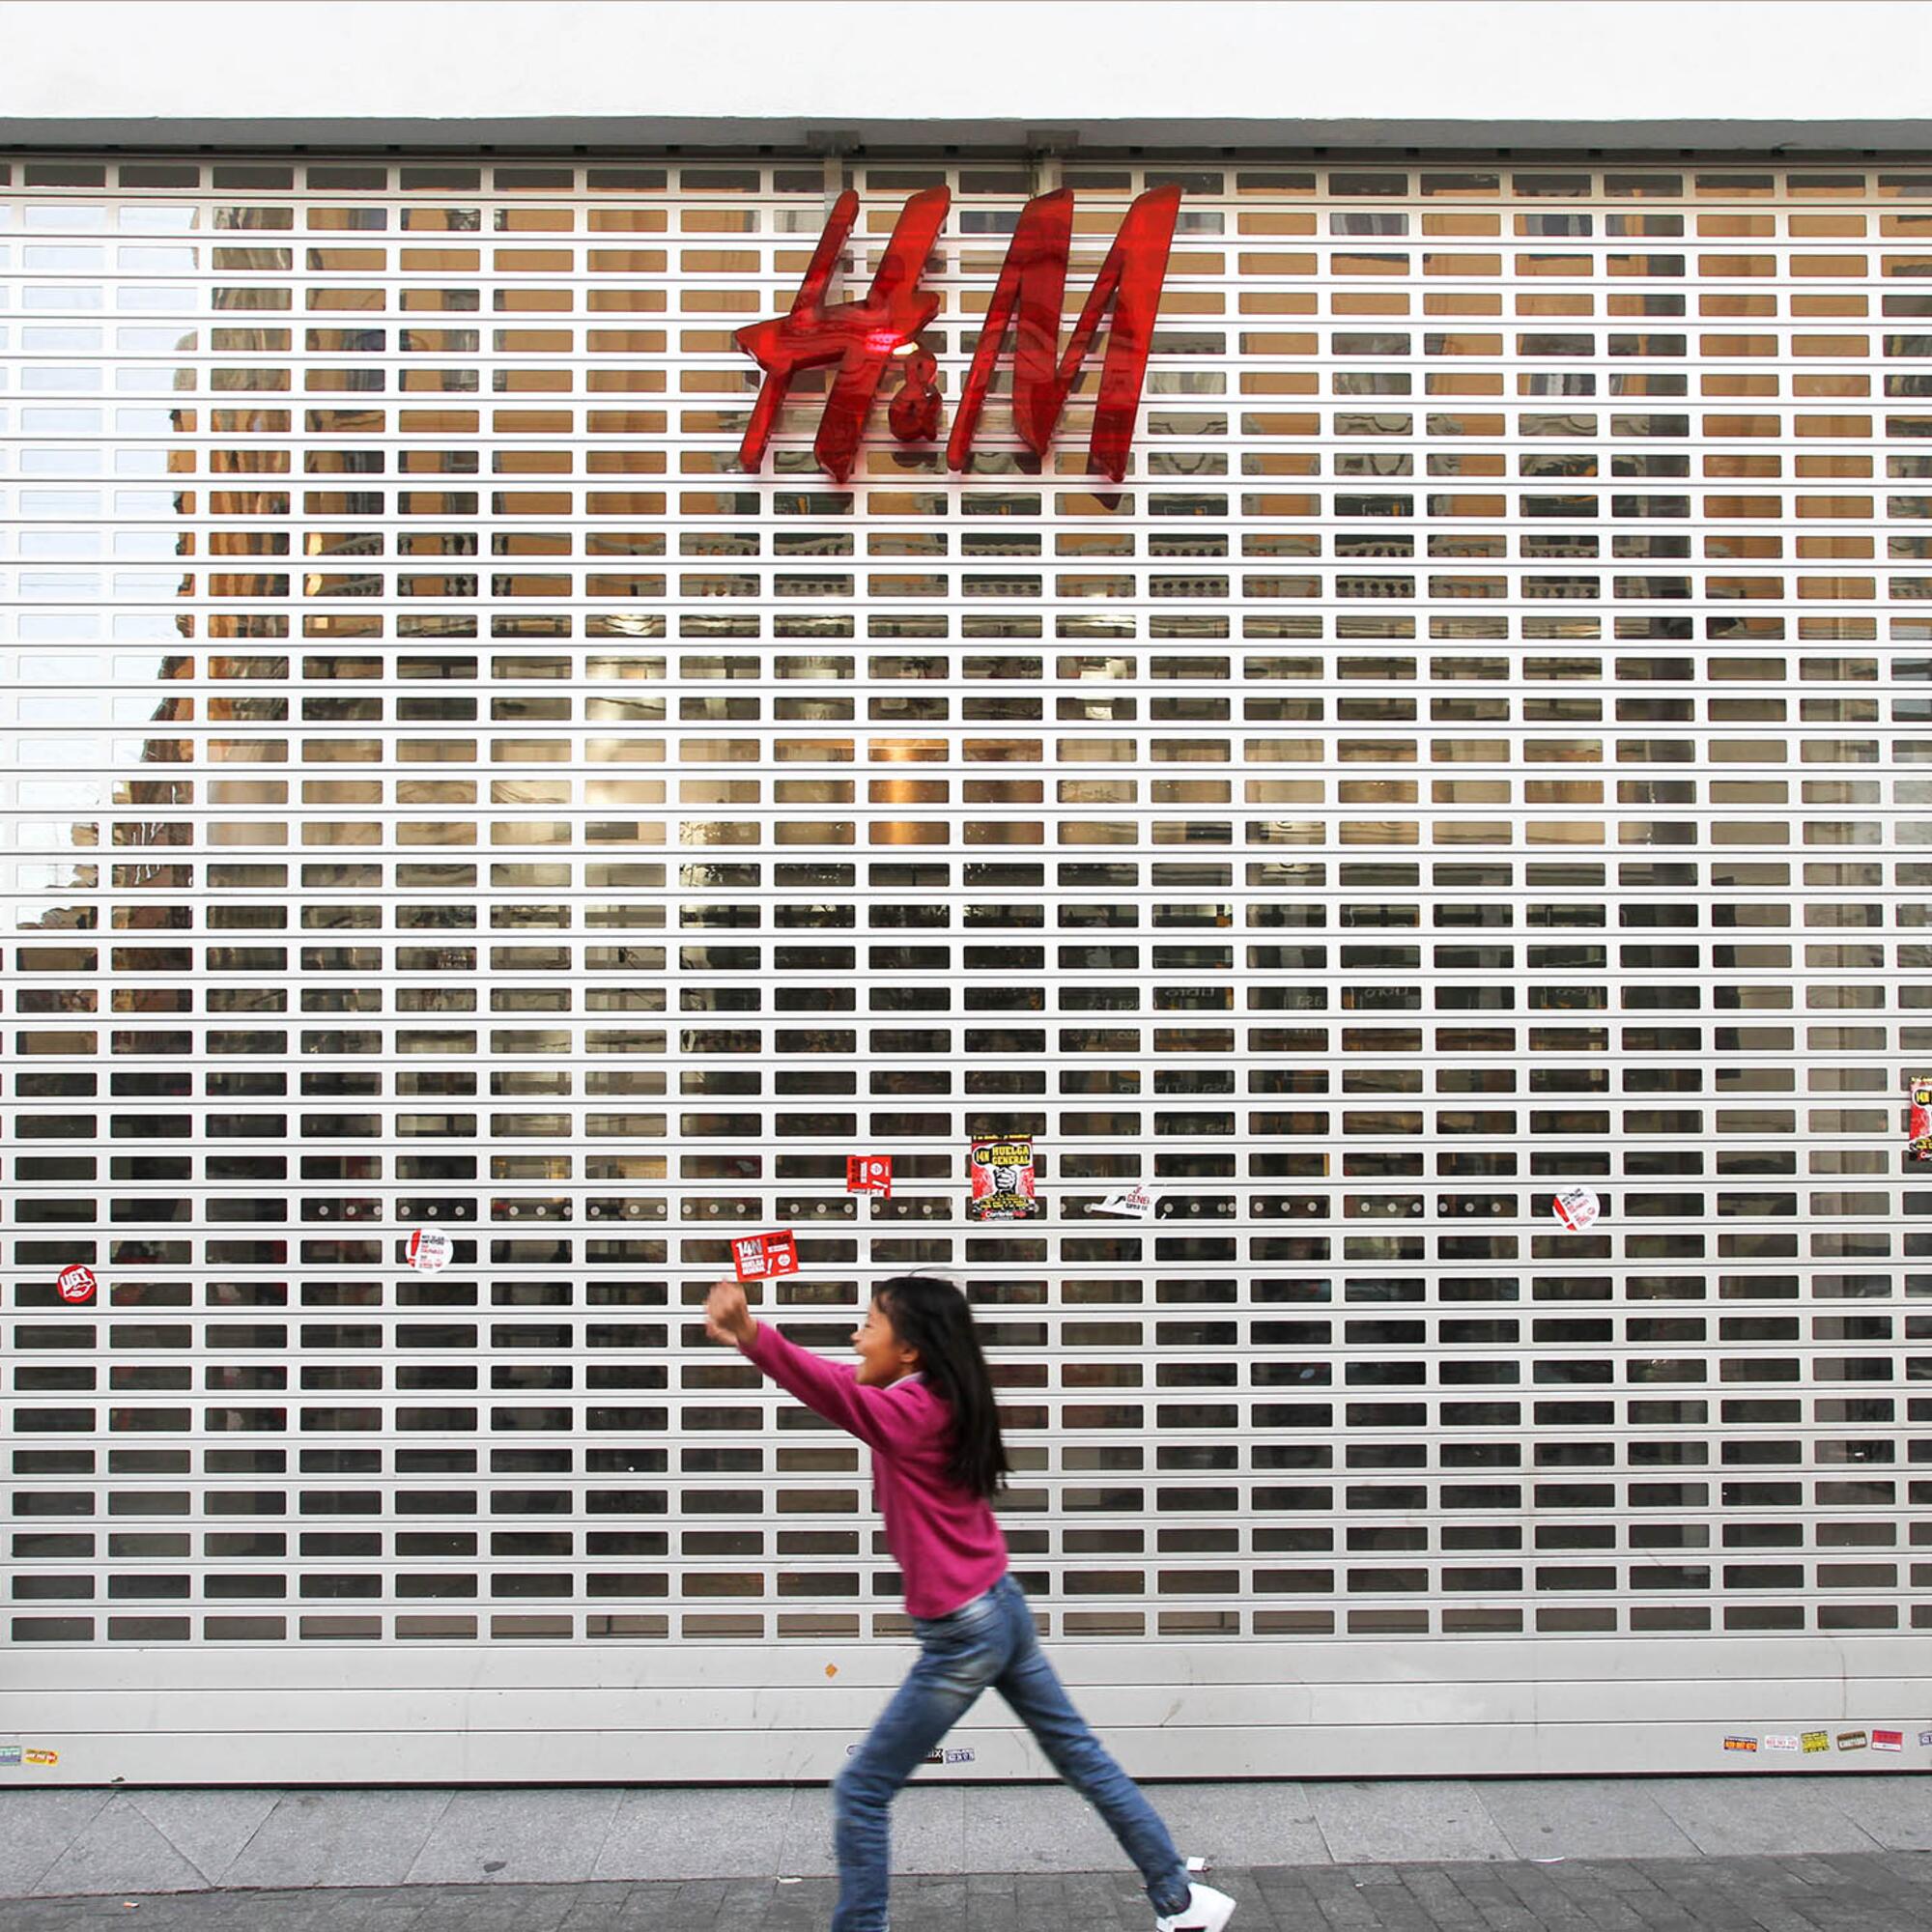 H&M tienda de ropa cerrada huelga general